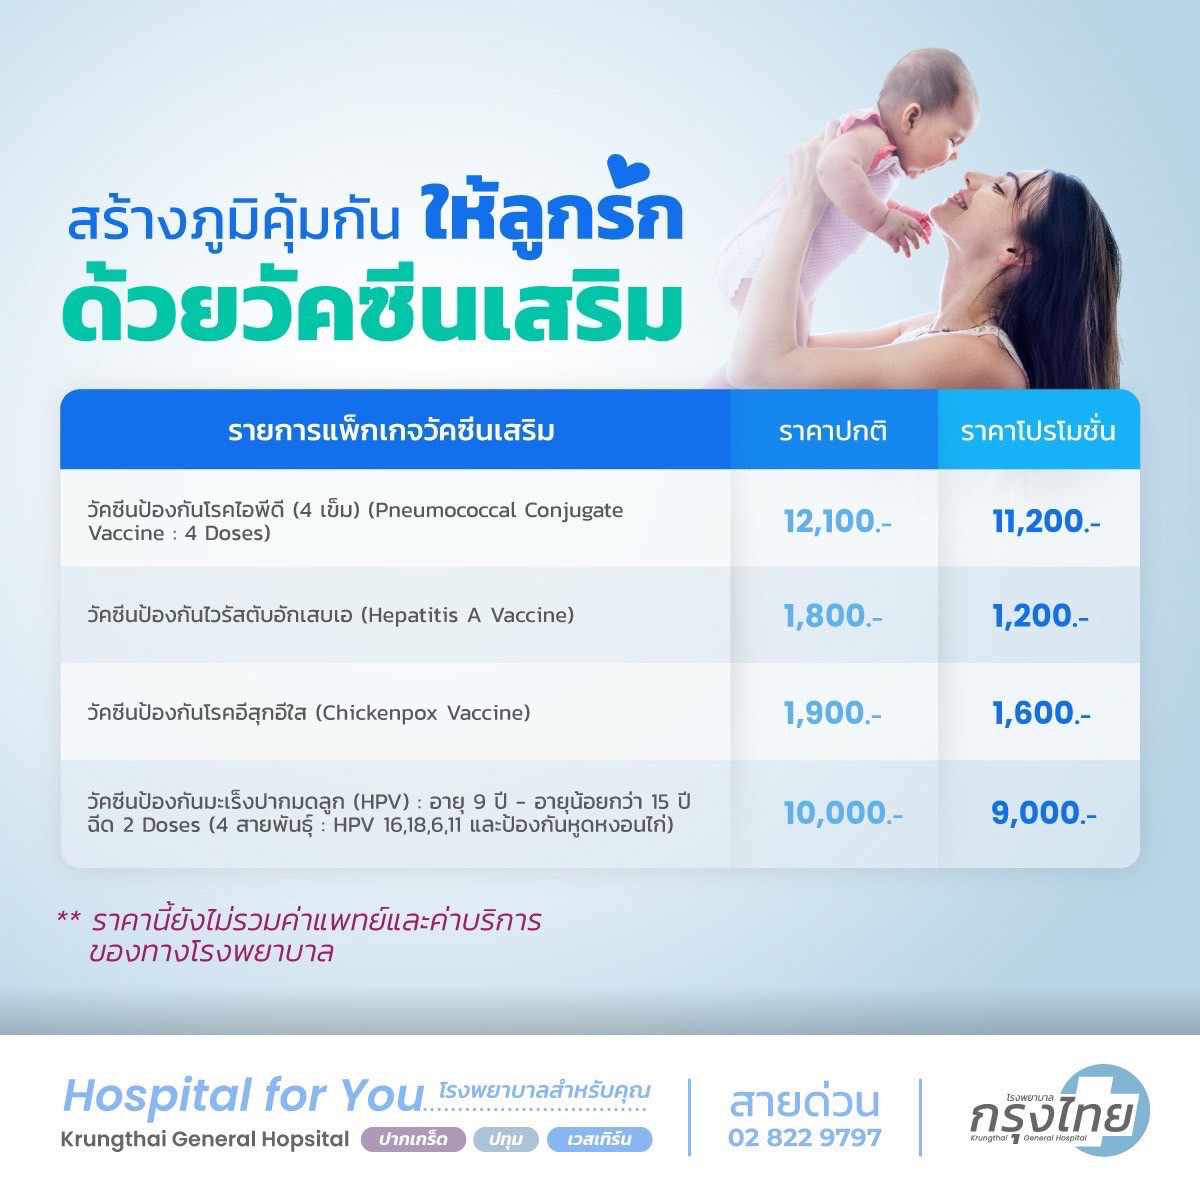 แพ็คเกจวัคซีนเด็ก (แพ็คเสริม) โรงพยาบาลกรุงไทย